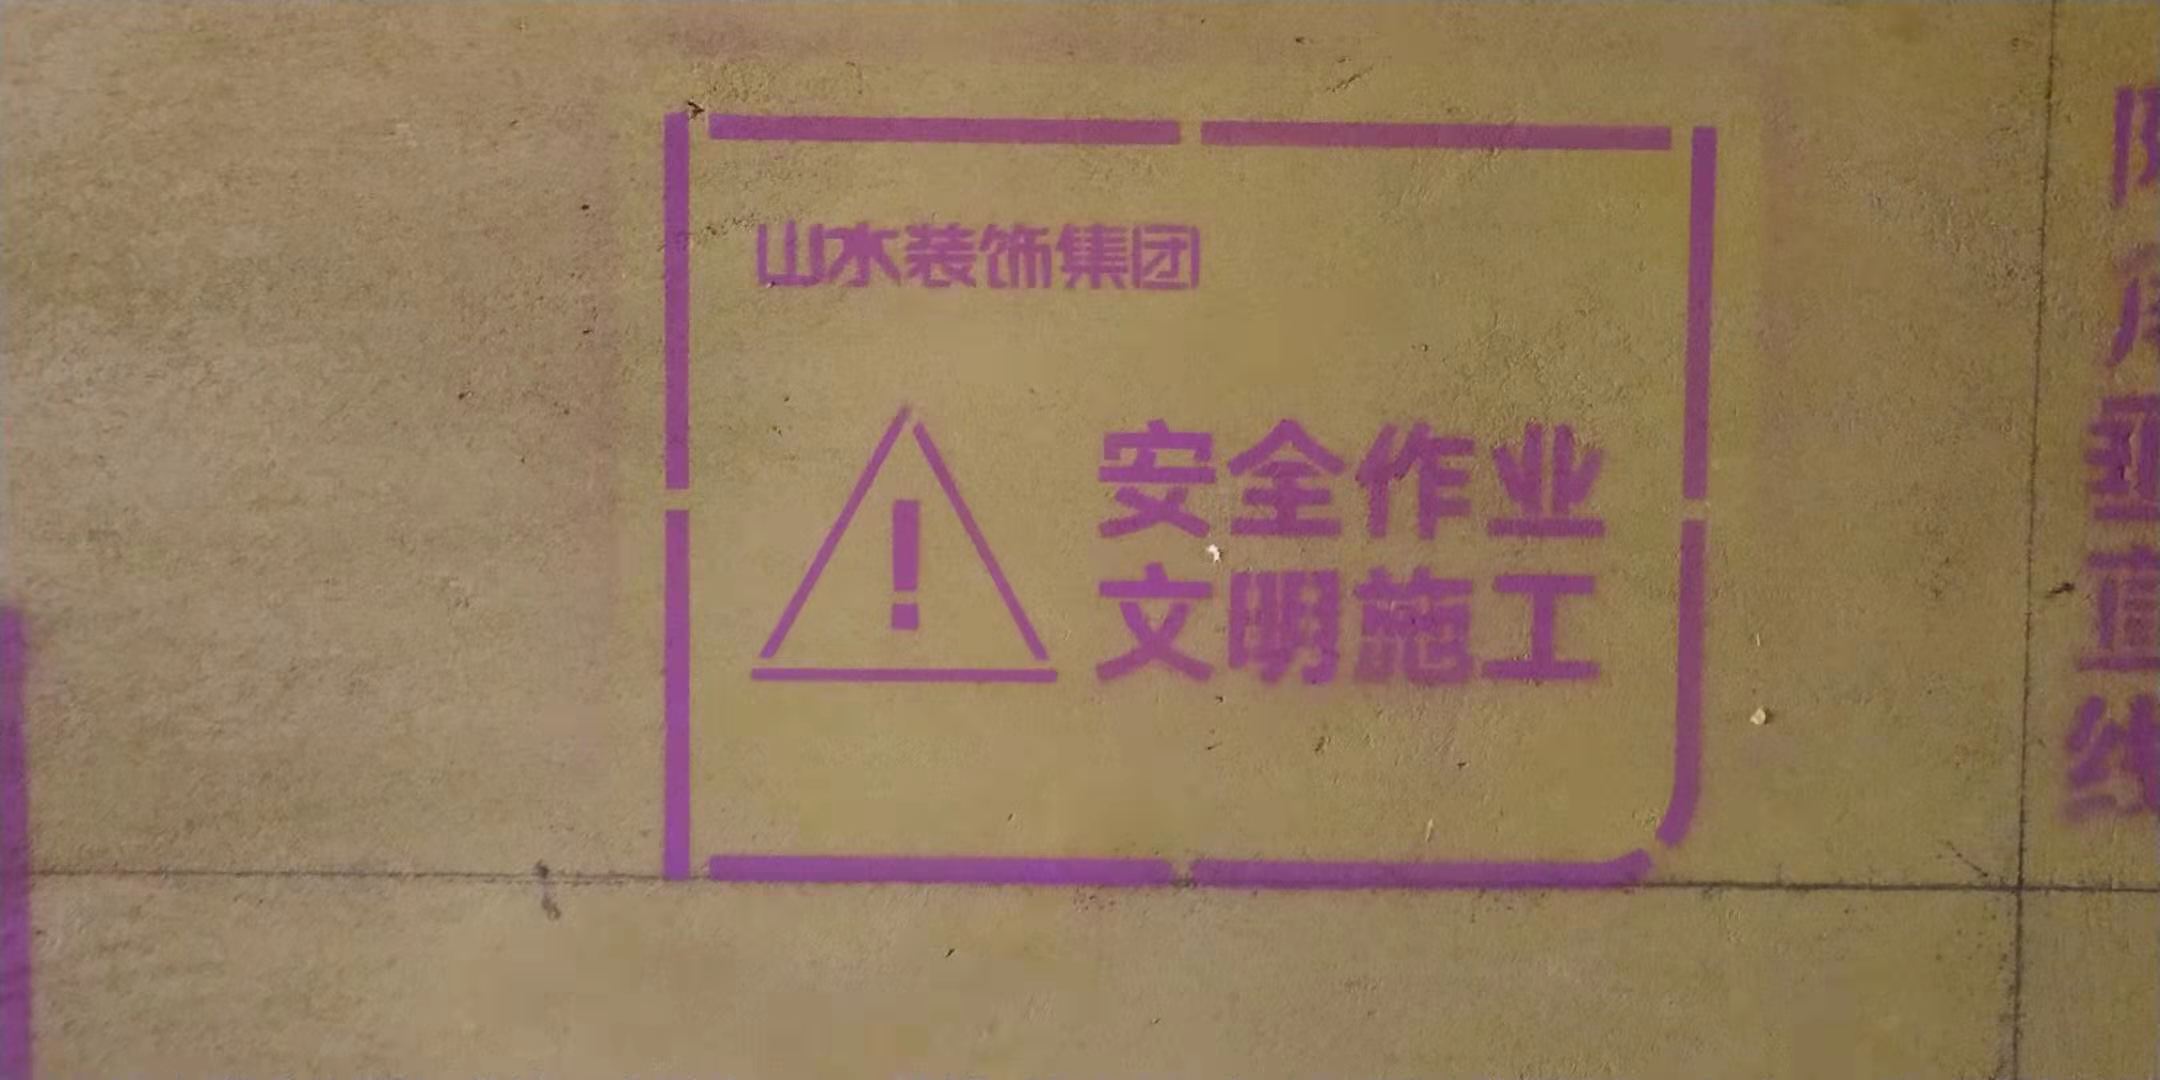 龙川里-黄墙紫地/3D全景放样-山水装饰